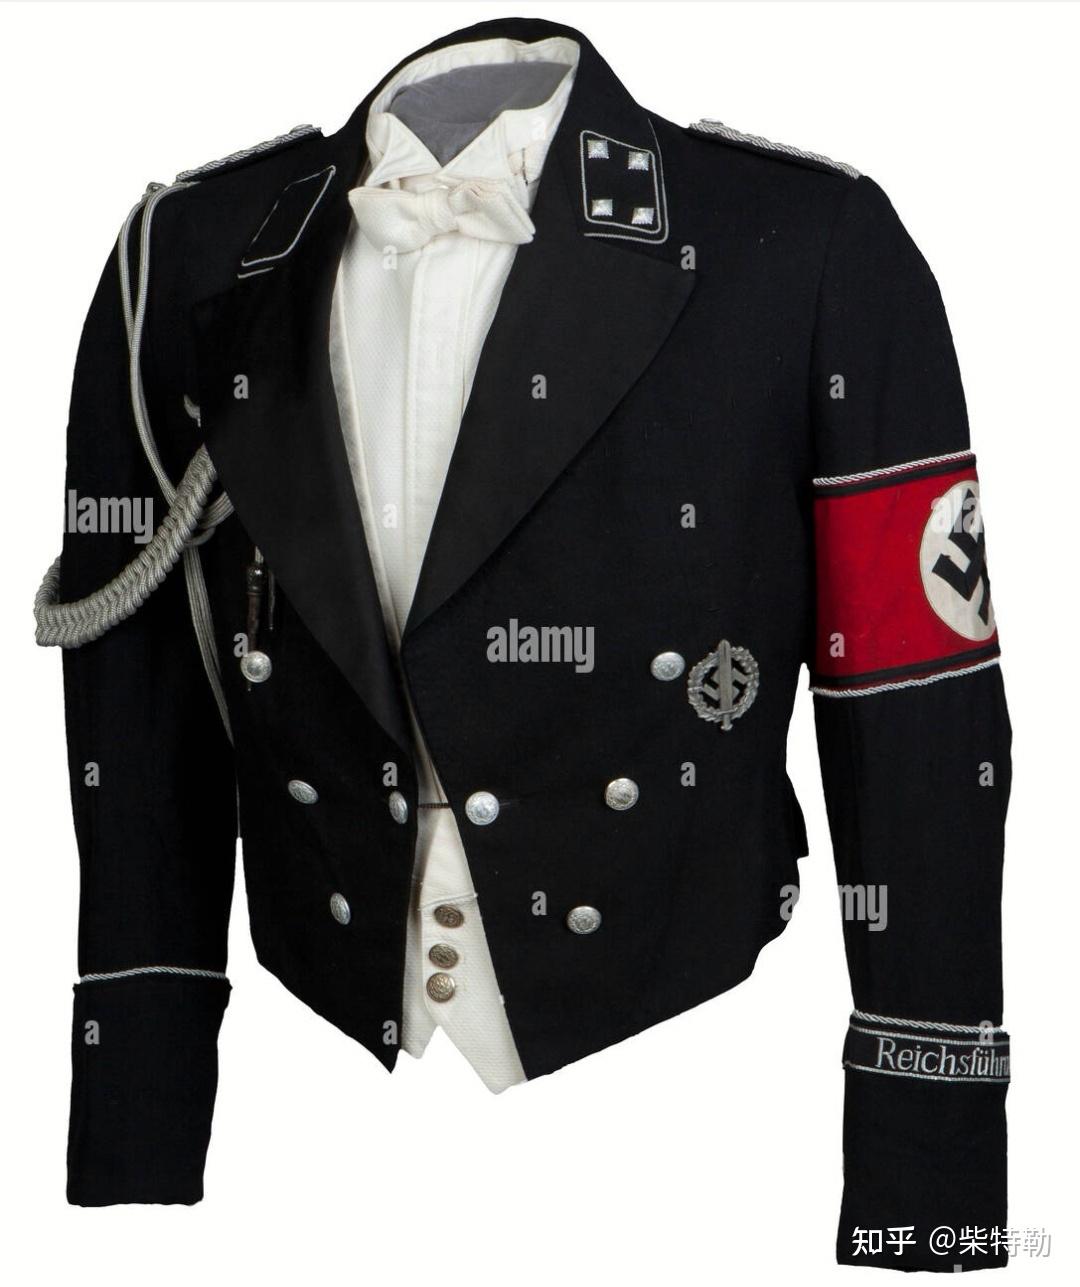 ⑨:纳粹党卫队晚礼服及夏季款式白色制服